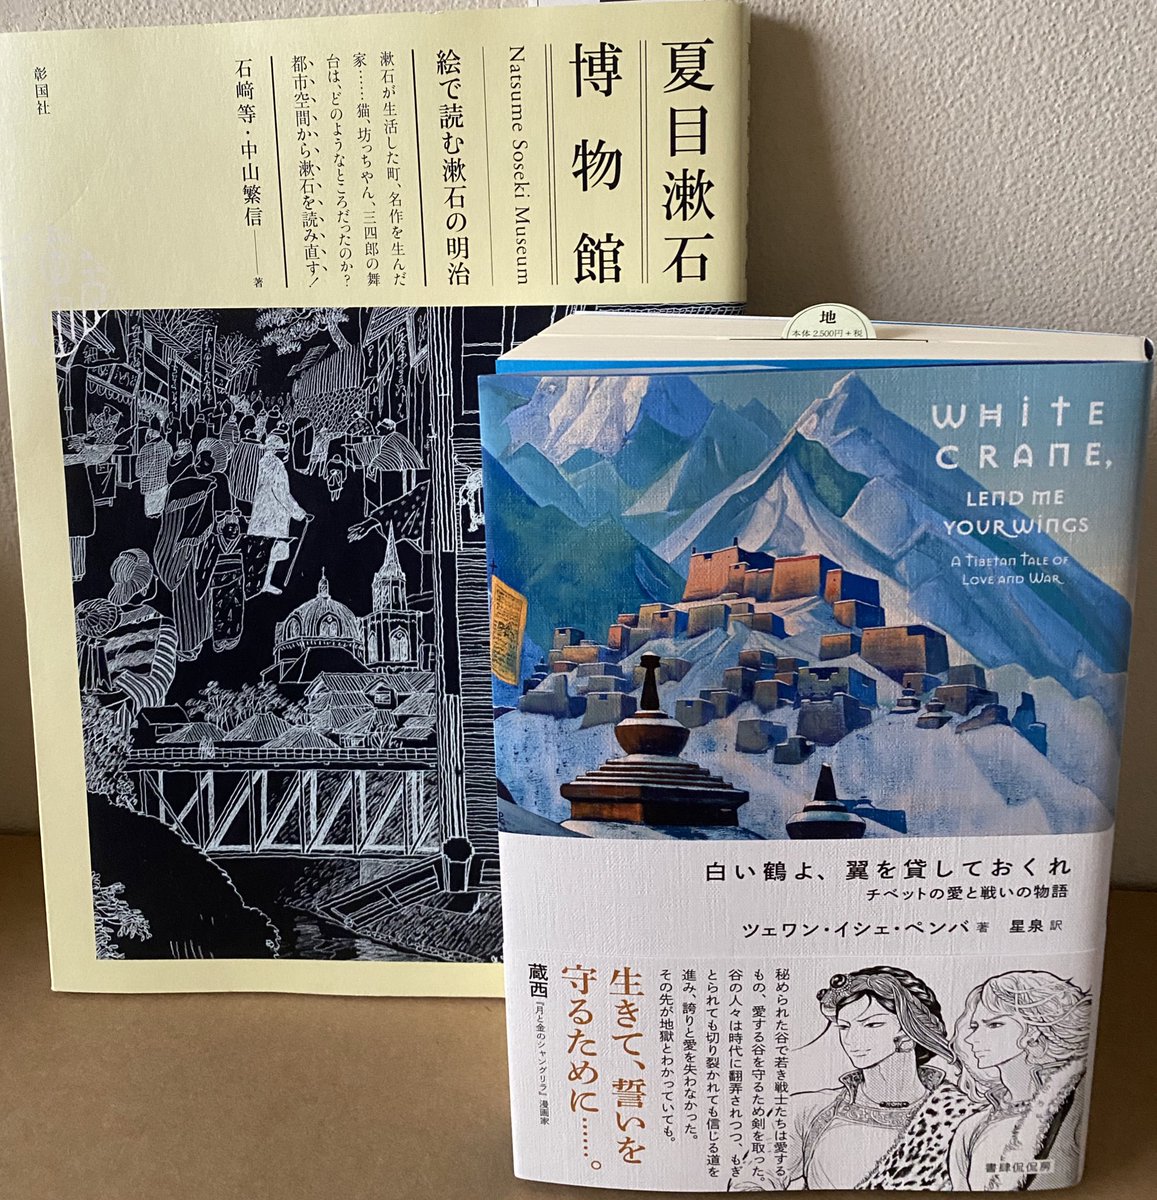 Tamaka 本日のジャケ買い 夏目漱石博物館 は建築家になりたかったという漱石の作品世界と 漱石が生きた時代をペン画タッチの河童風イラストで再現しています 楽しい 白い鶴よ 翼を貸しておくれ はチベットの小説 辛いことがいっぱい起こり